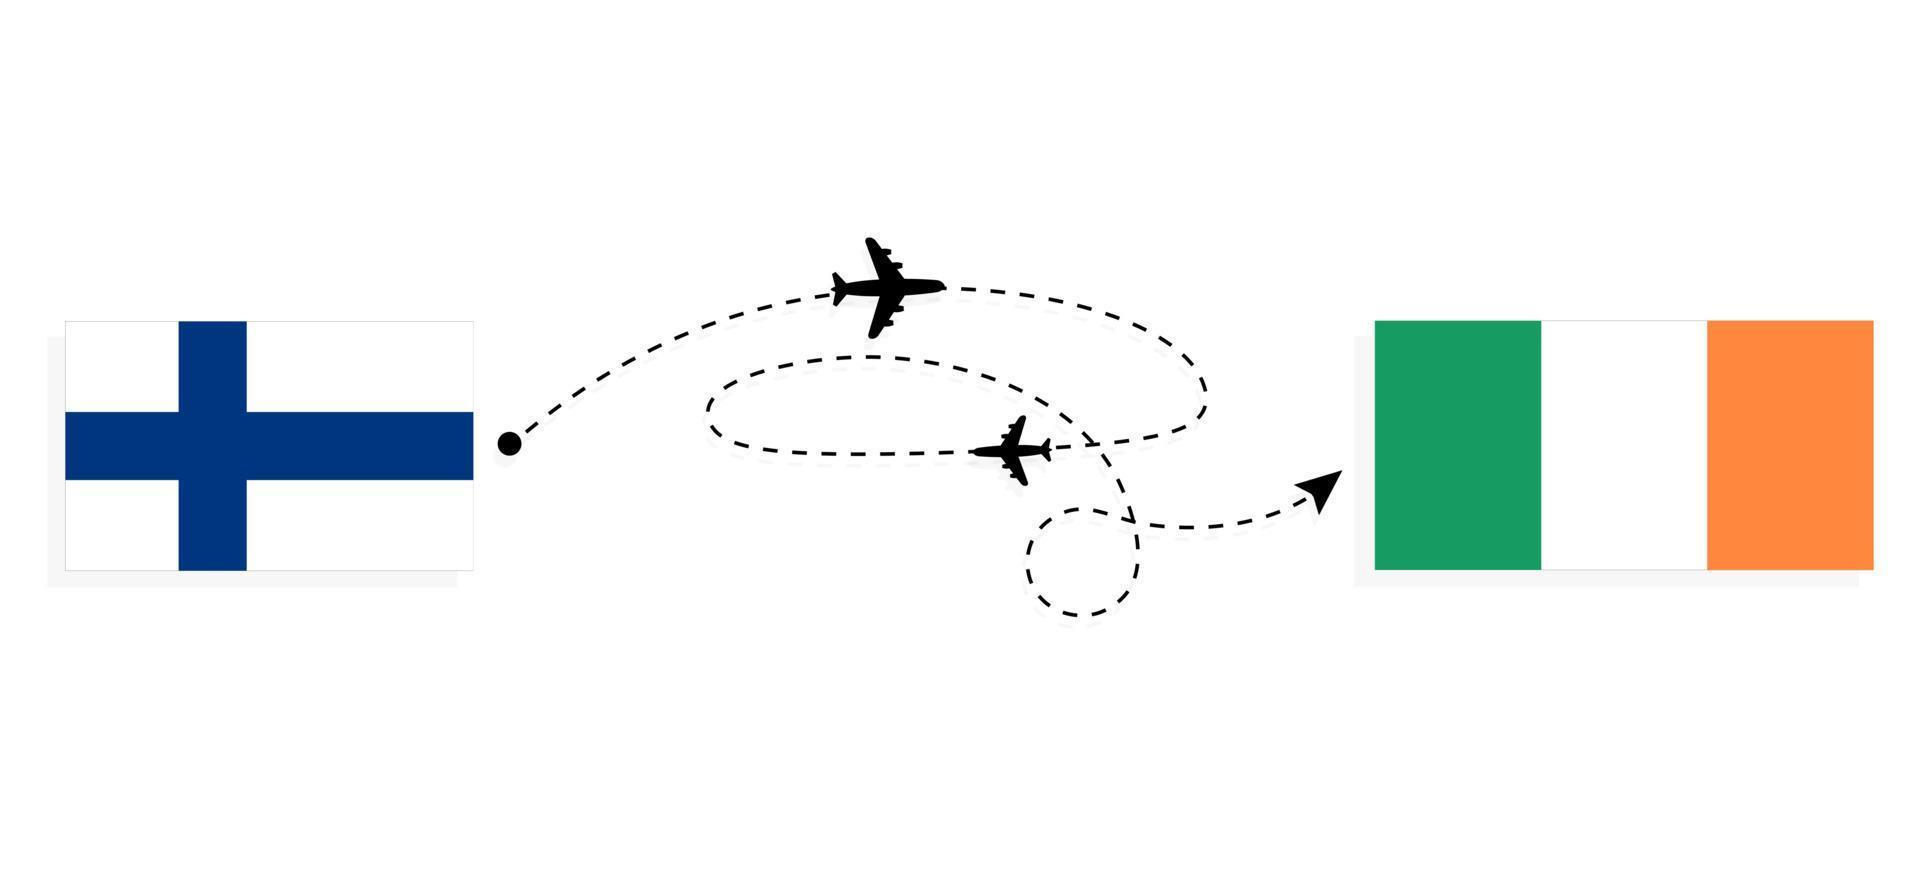 vol et voyage de la finlande à l'irlande par concept de voyage en avion de passagers vecteur